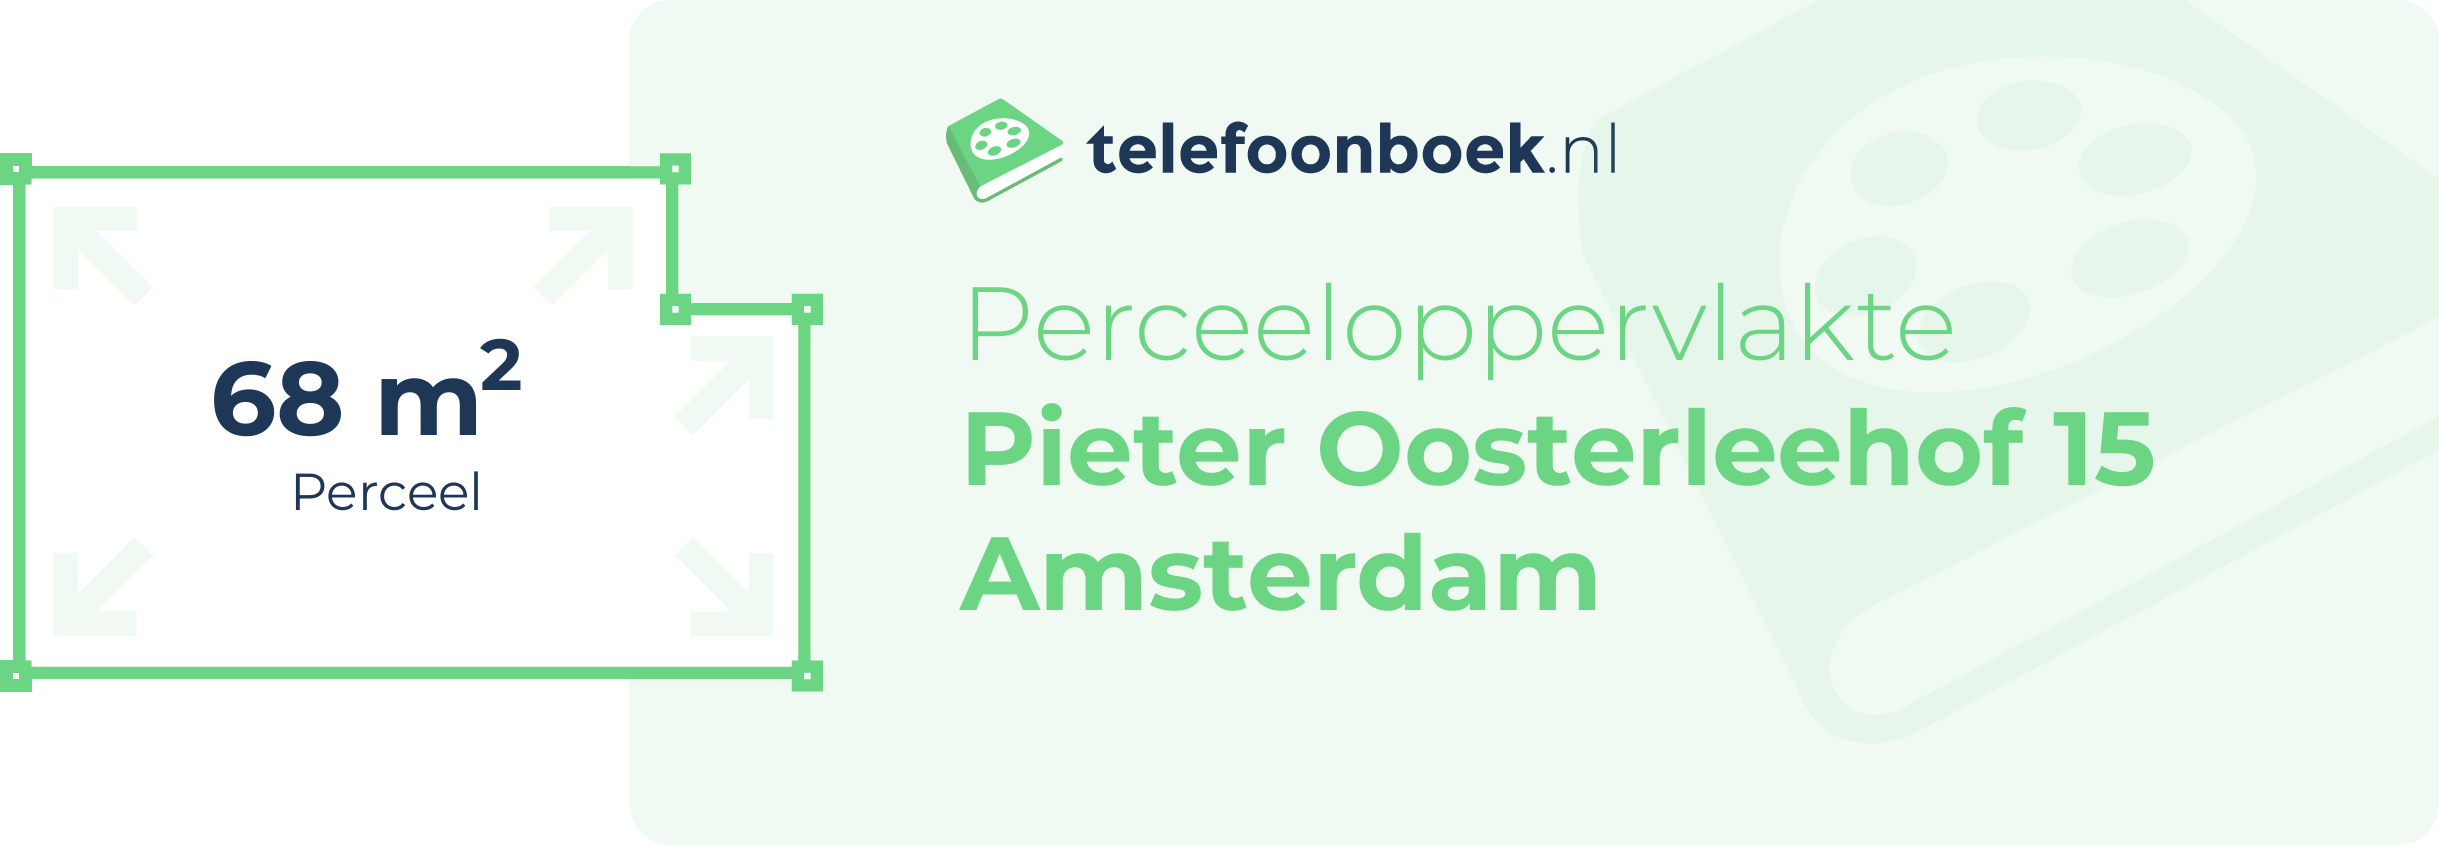 Perceeloppervlakte Pieter Oosterleehof 15 Amsterdam